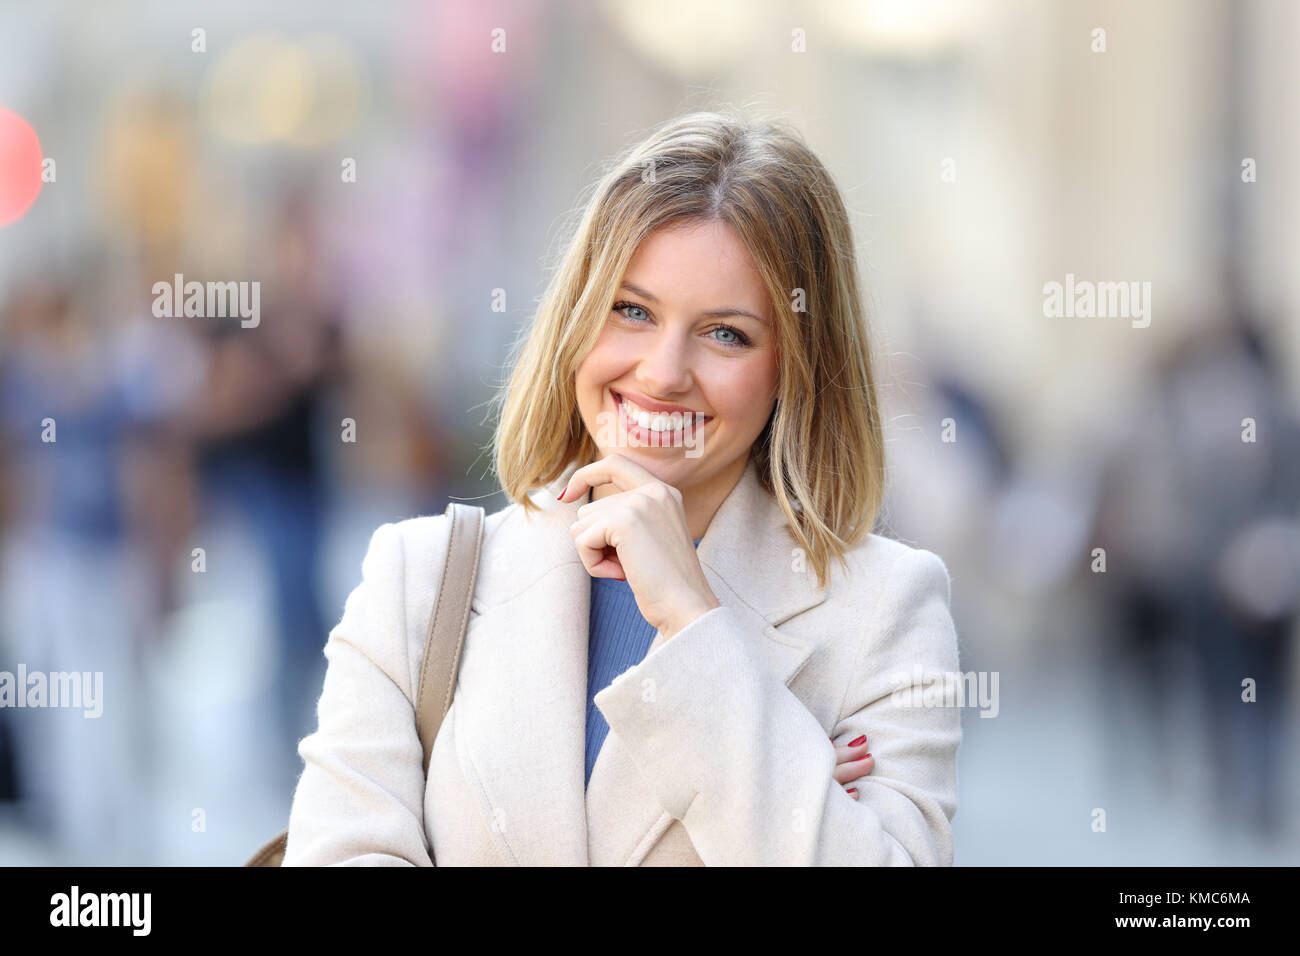 Vue avant, portrait d'une femme confiante en vous regardant dans la rue en hiver Banque D'Images